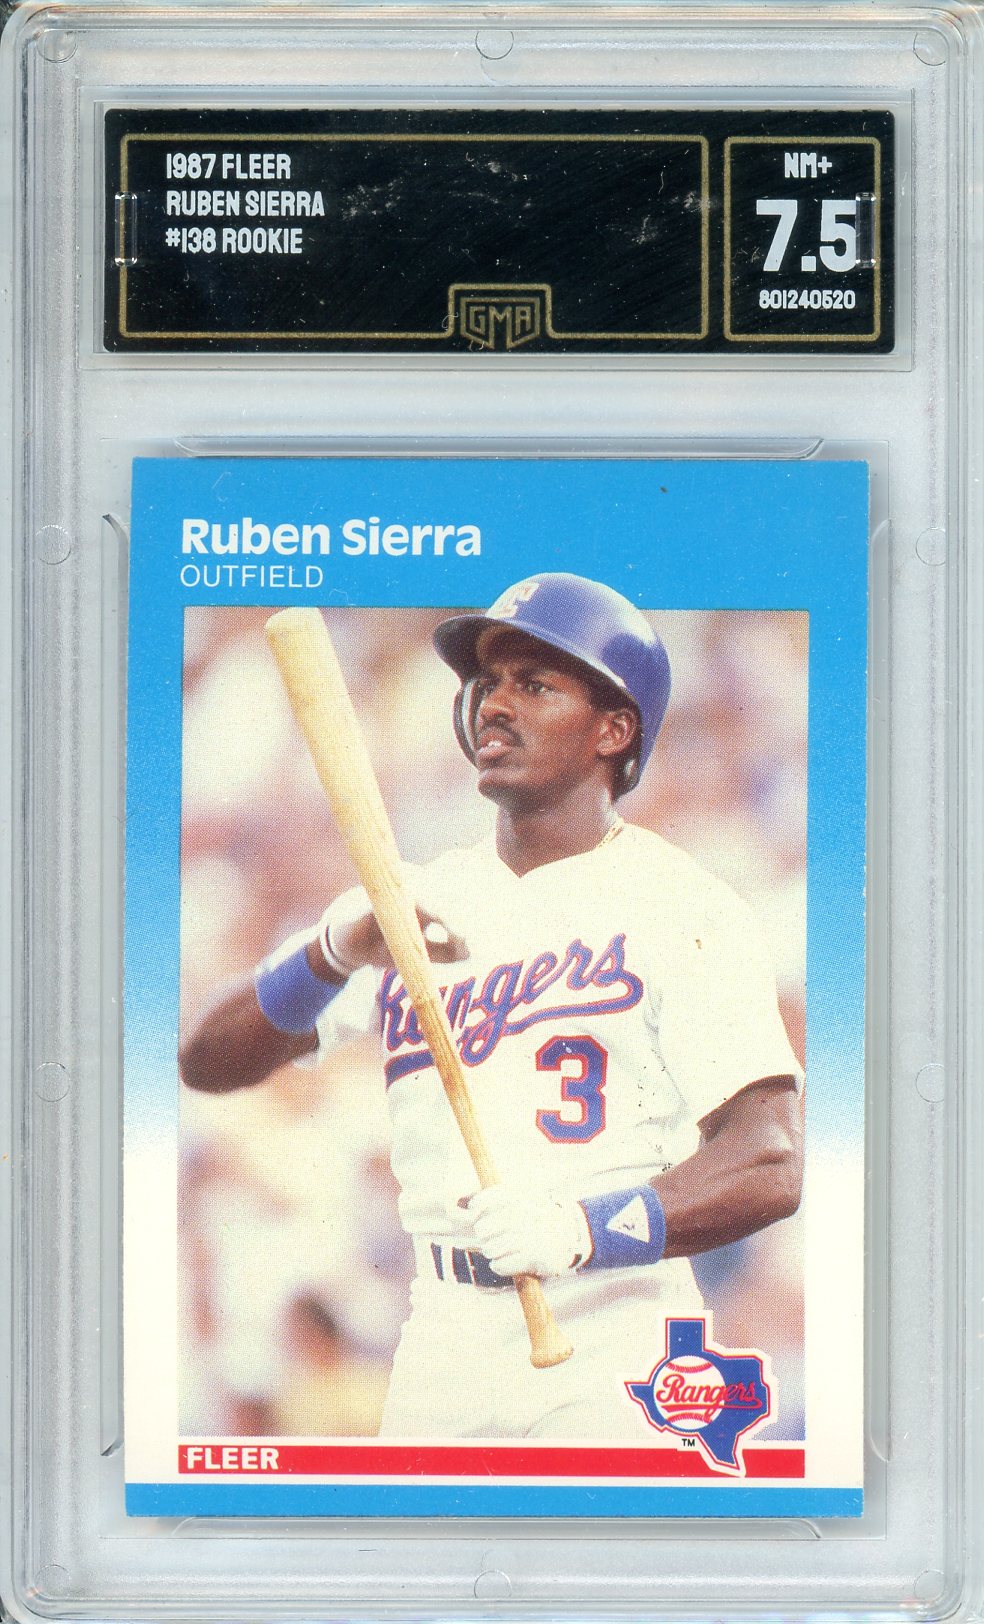 1987 Fleer Ruben Sierra #138 Rookie GMA 7.5